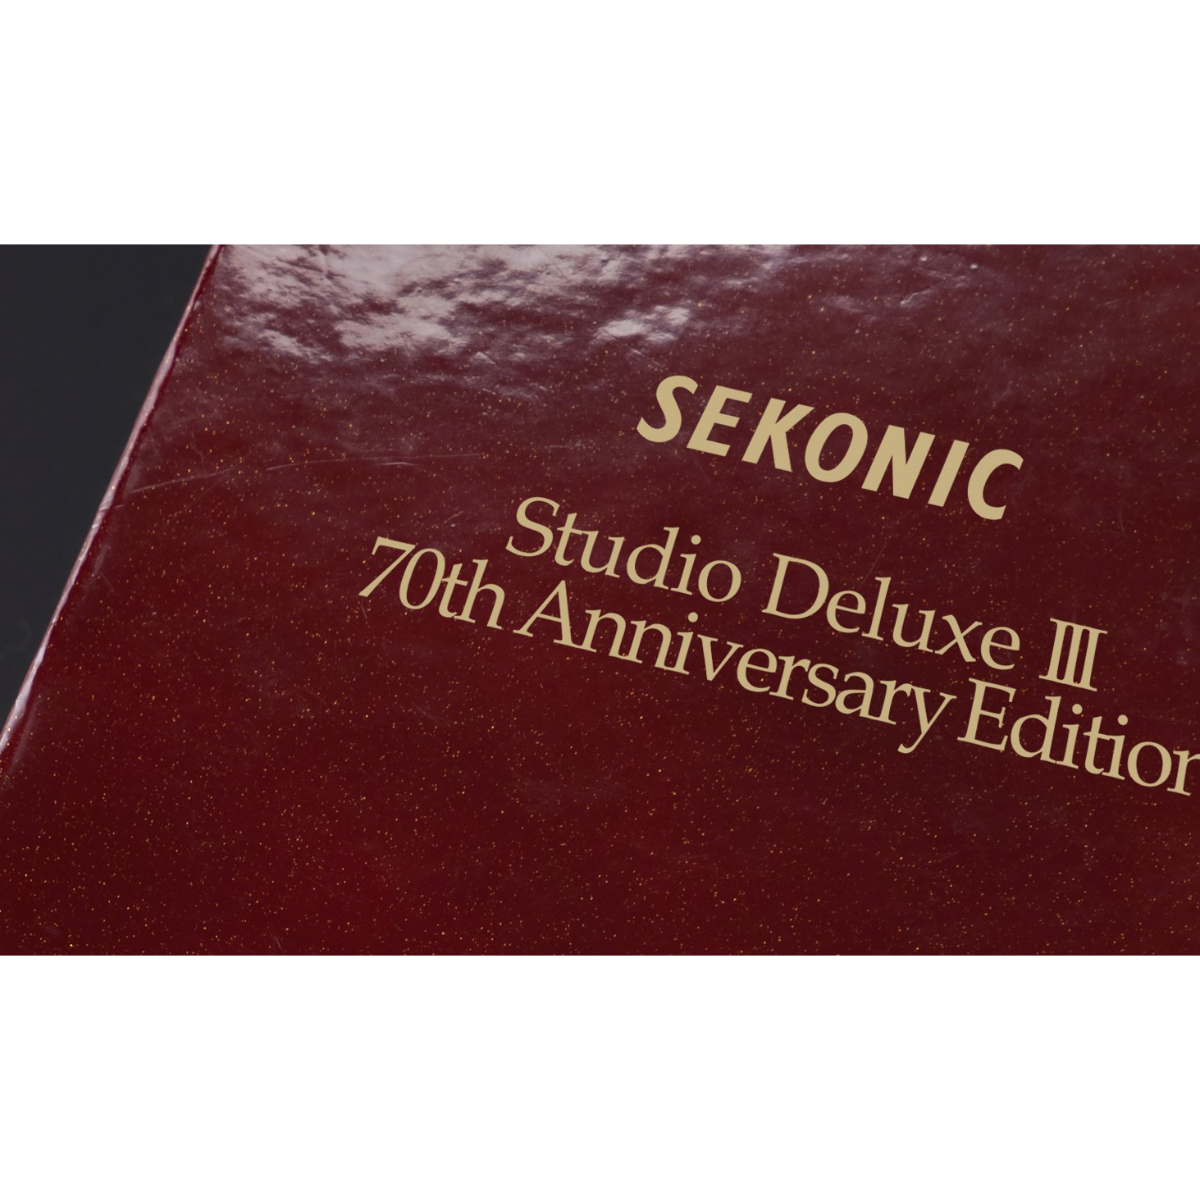 SEKONIC L-398a Studio Deluxe III Anniversart Edition